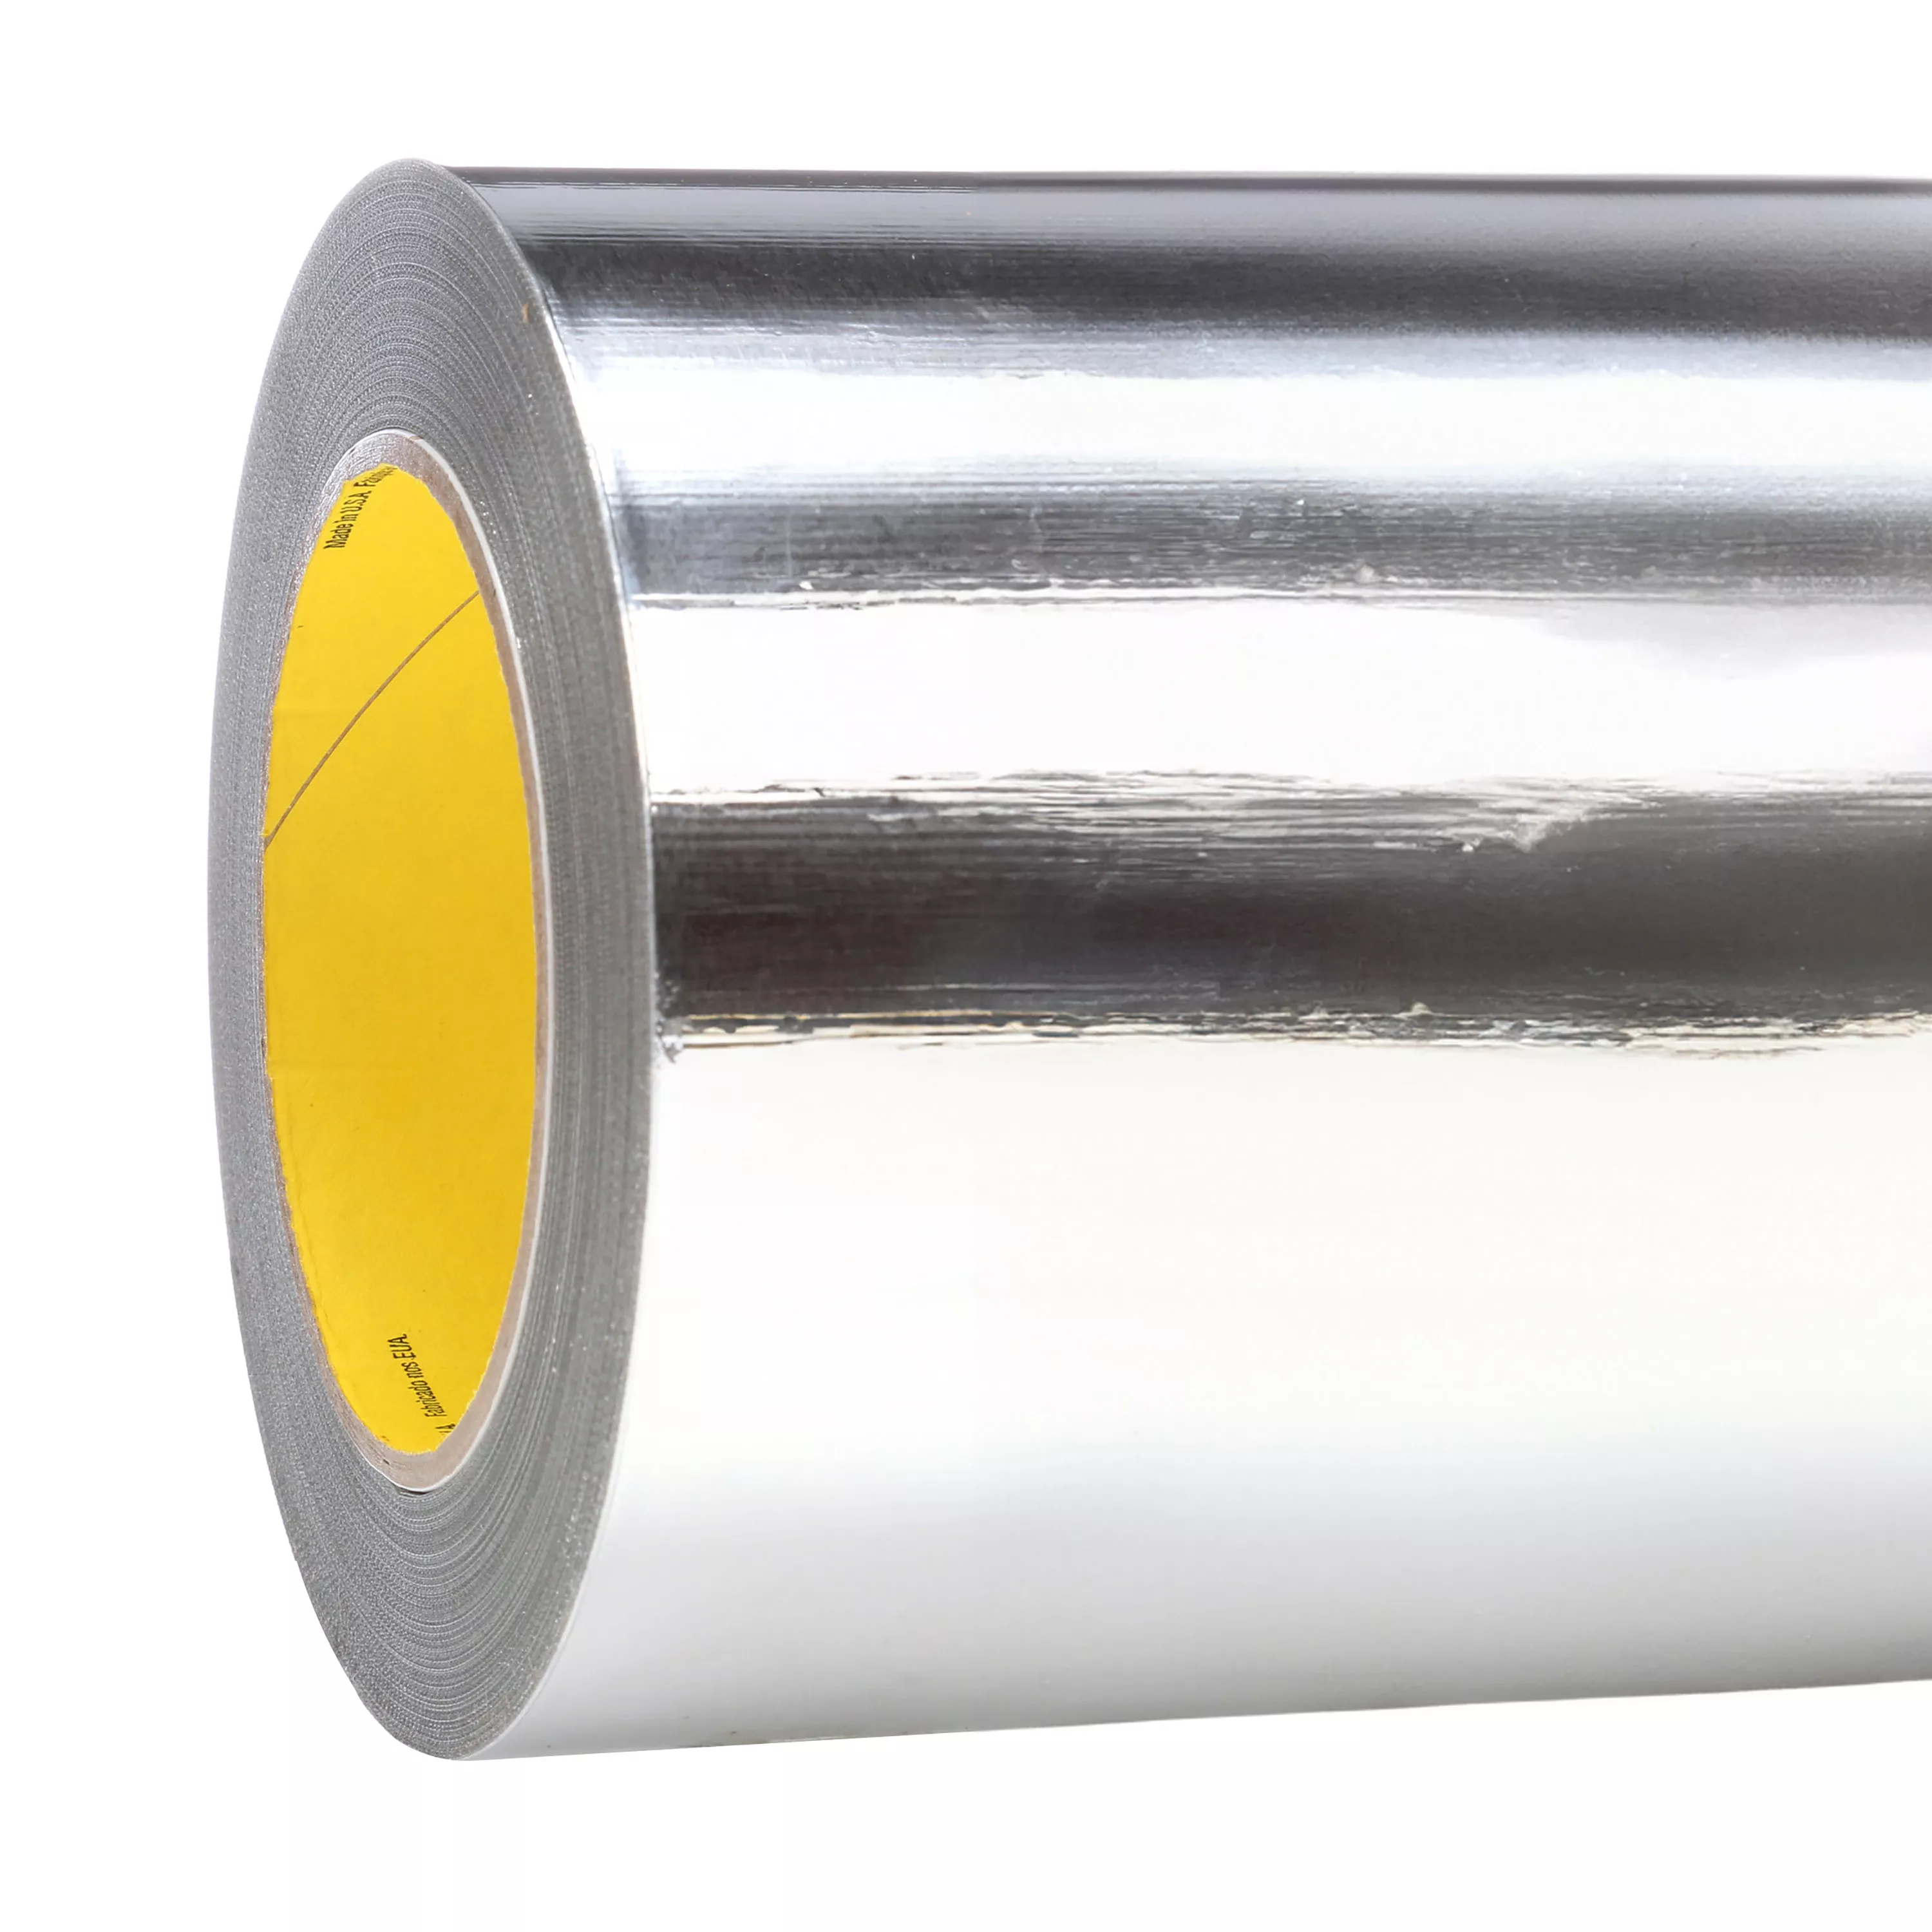 3M™ Aluminum Foil Tape 427, Silver, 19 in x 60 yd, 4.6 mil, 1 roll per
case